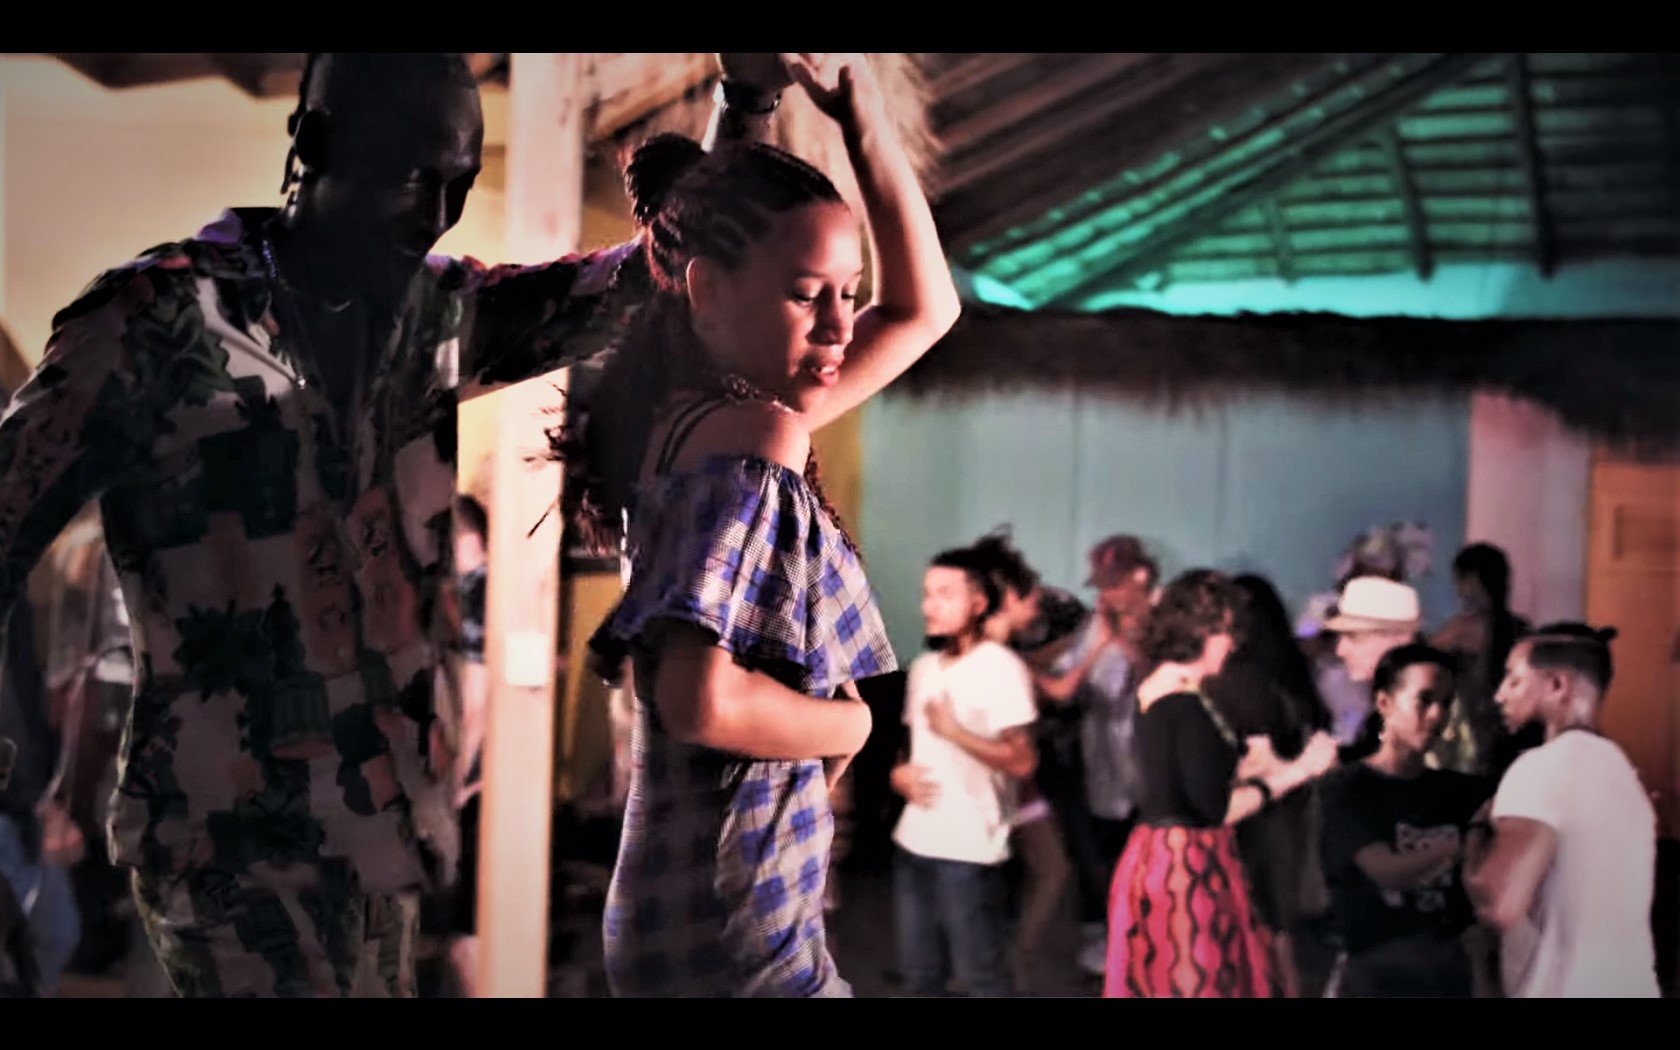 bachata haiti dominicana ruben-dance kurzy v praze